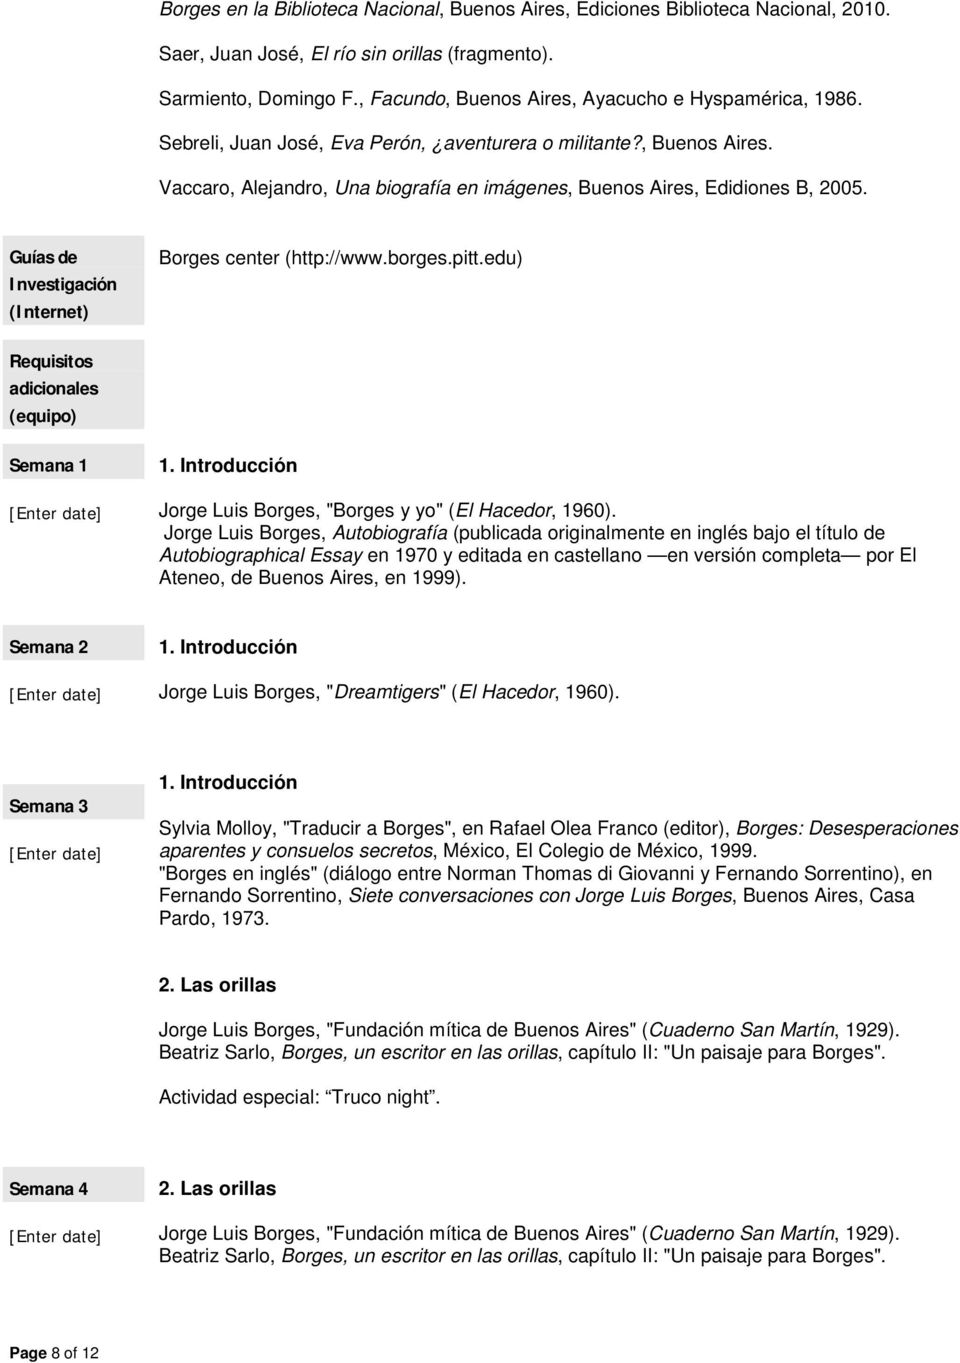 Guías de Investigación (Internet) Borges center (http://www.borges.pitt.edu) Requisitos adicionales (equipo) Semana 1 1. Introducción Jorge Luis Borges, "Borges y yo" (El Hacedor, 1960).